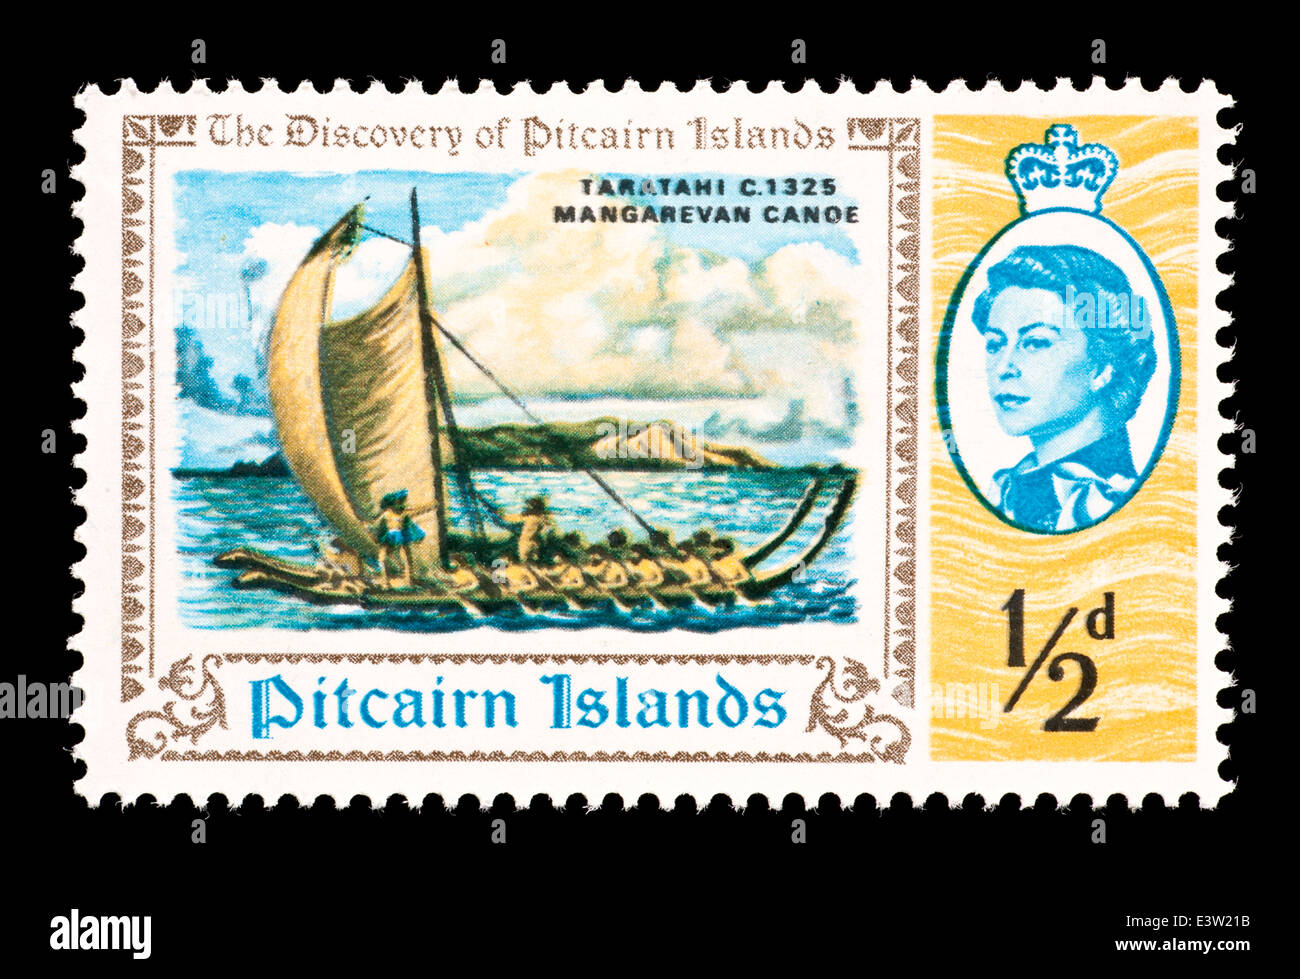 Francobollo dalle Isole Pitcairn raffigurante un Mangarevan canoa e Pitcairn Island. Foto Stock